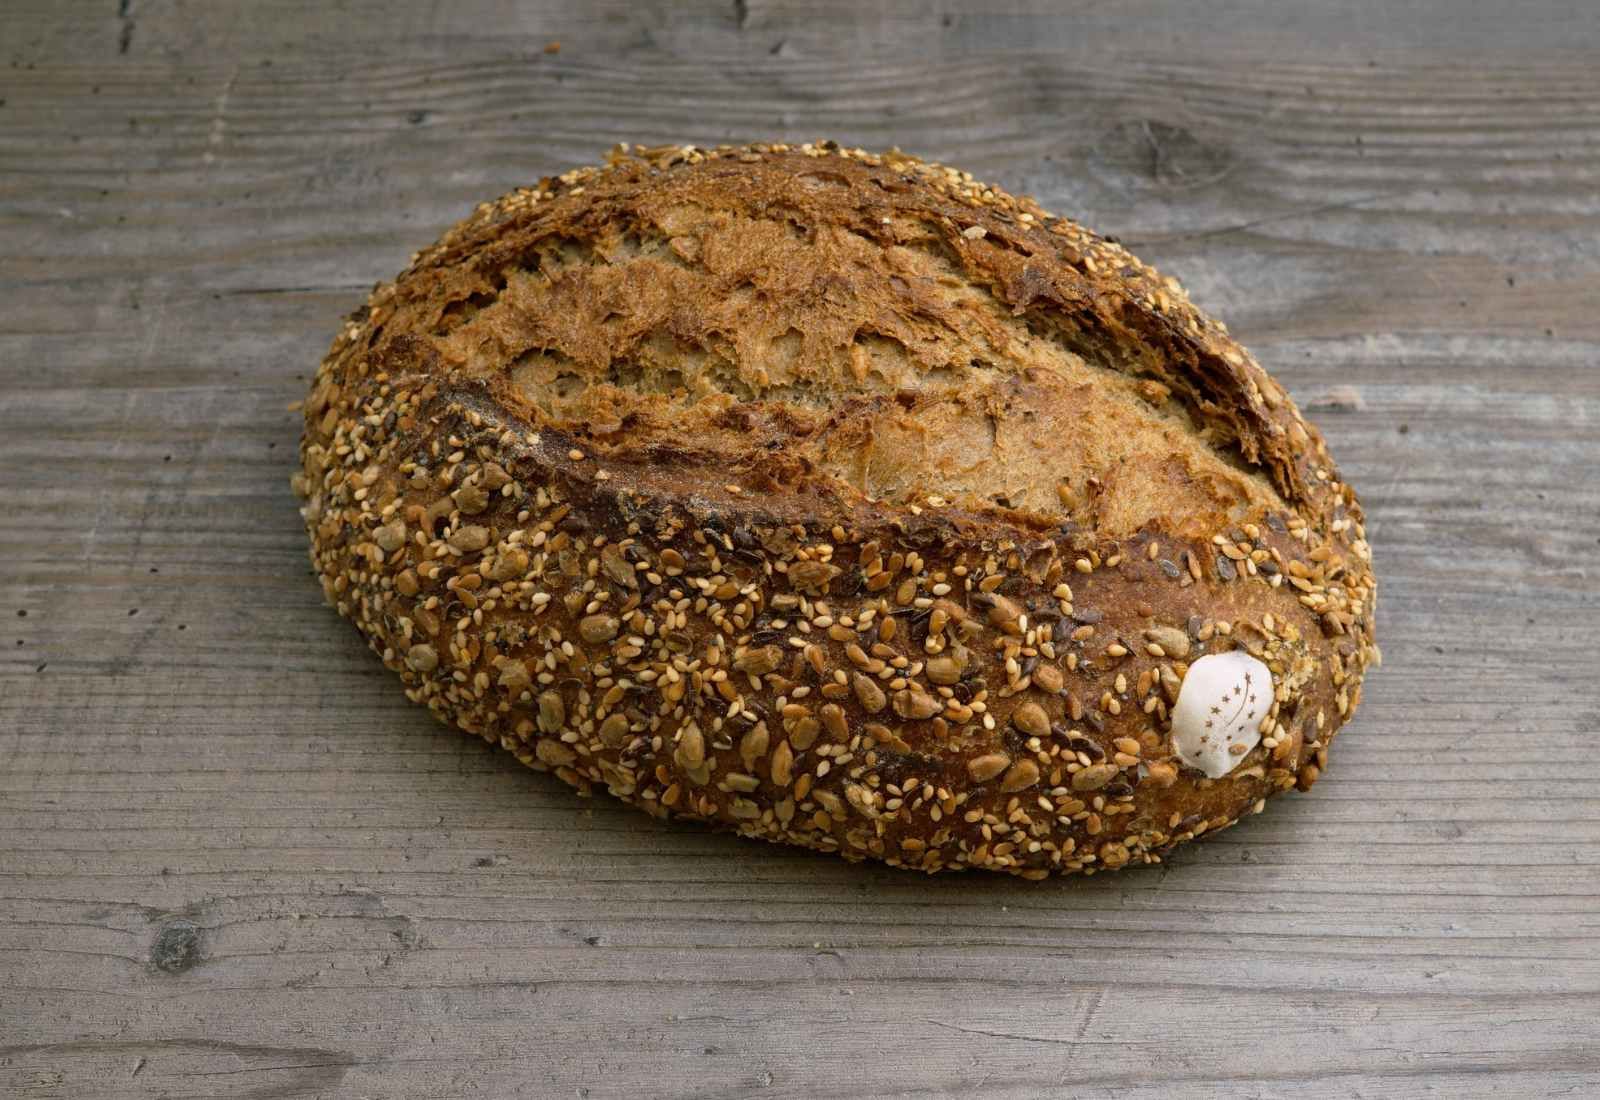 Bio Omega Brot reich bestreut mit einer Vielfalt an Saaten und Samen auf Holzuntergrund.